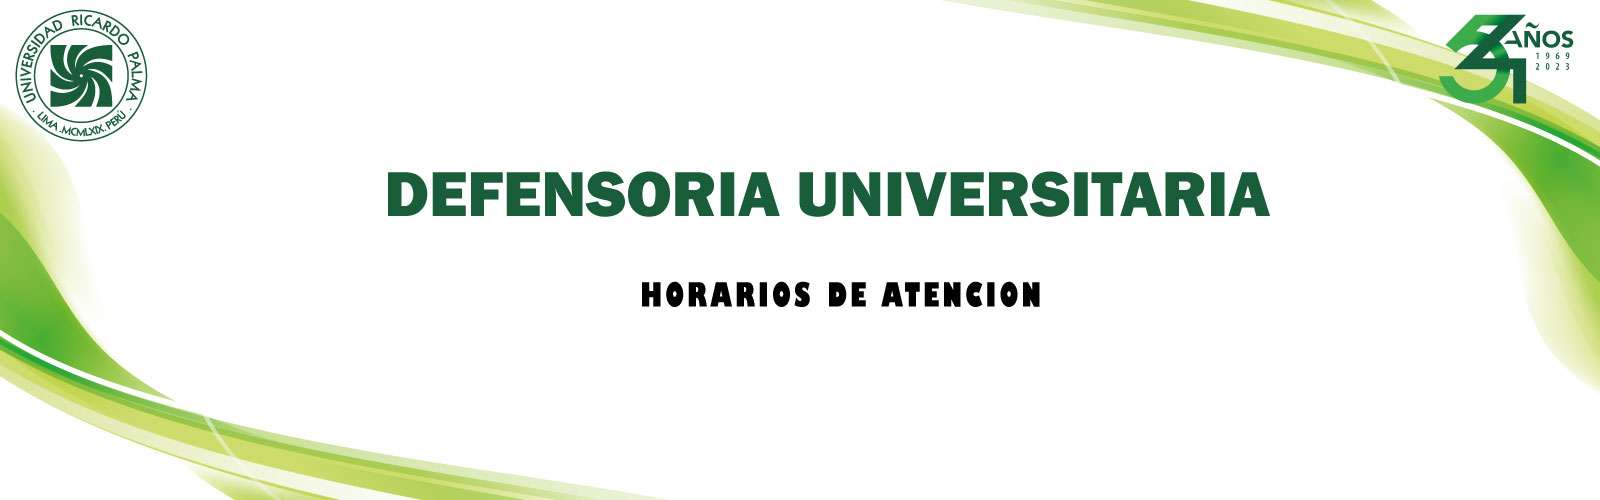 DEFENSORIA UNIVERSITARIA - HORARIOS DE ATENCION